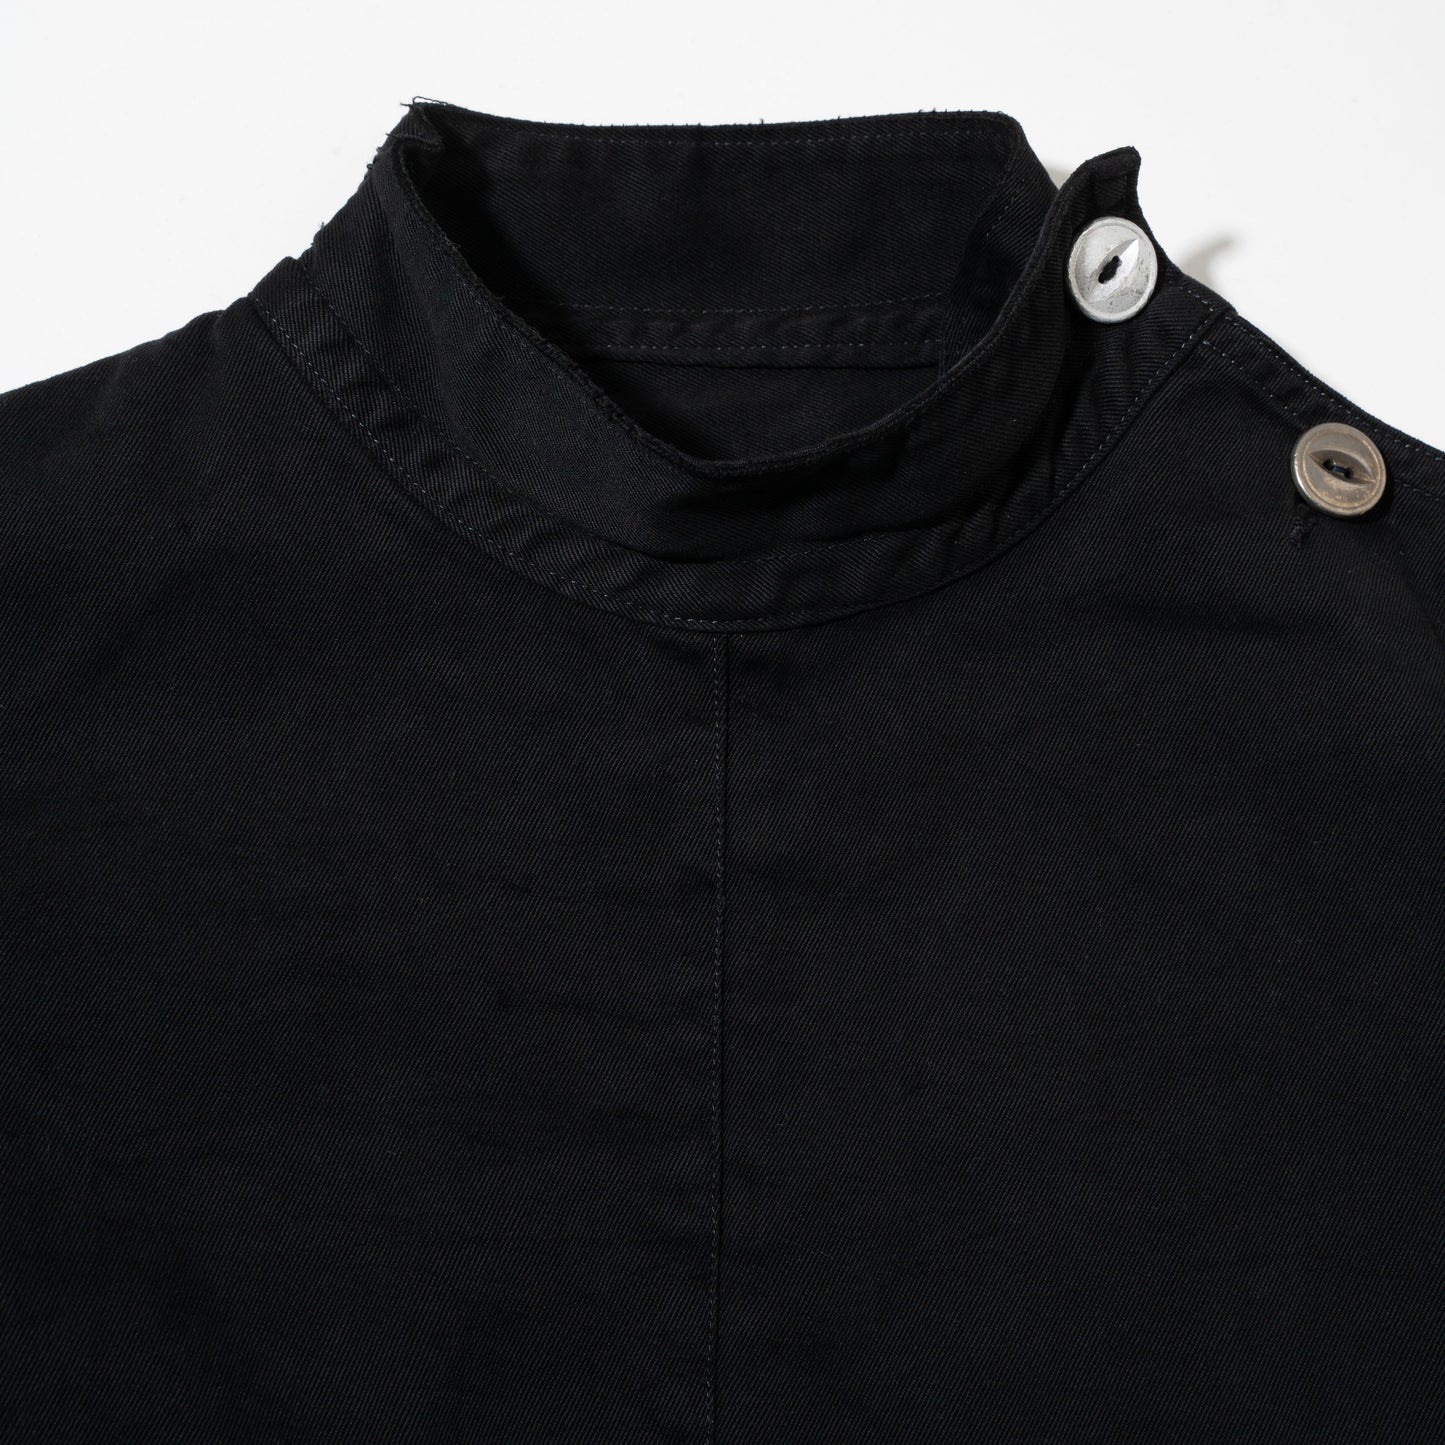 vintage french fencing jacket , black dye